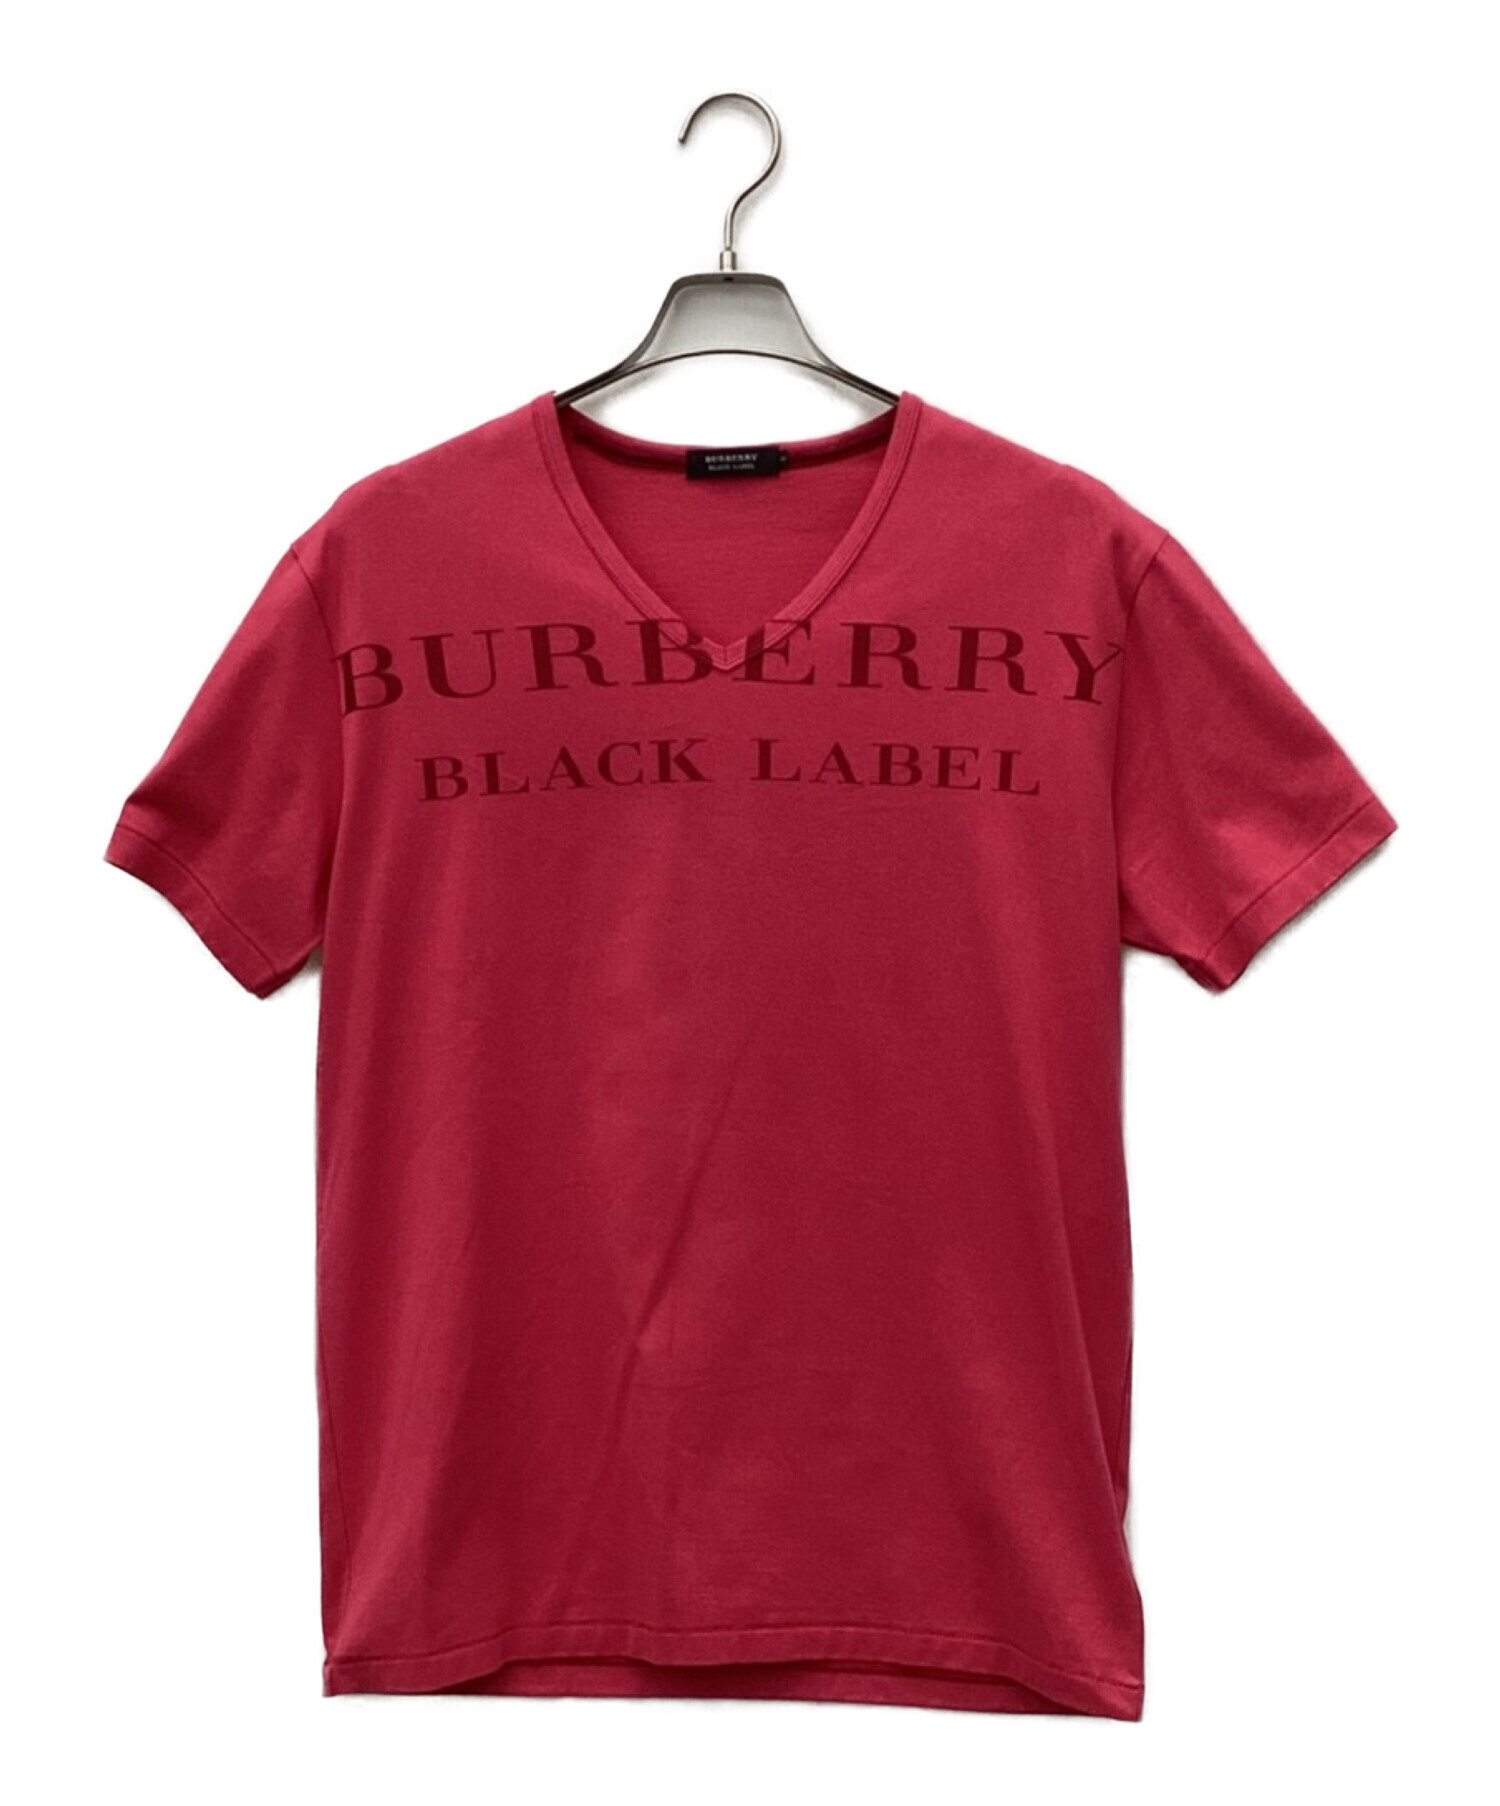 BURBERRY BLACK LABEL バーバリーブラックレーベル Tシャツ-